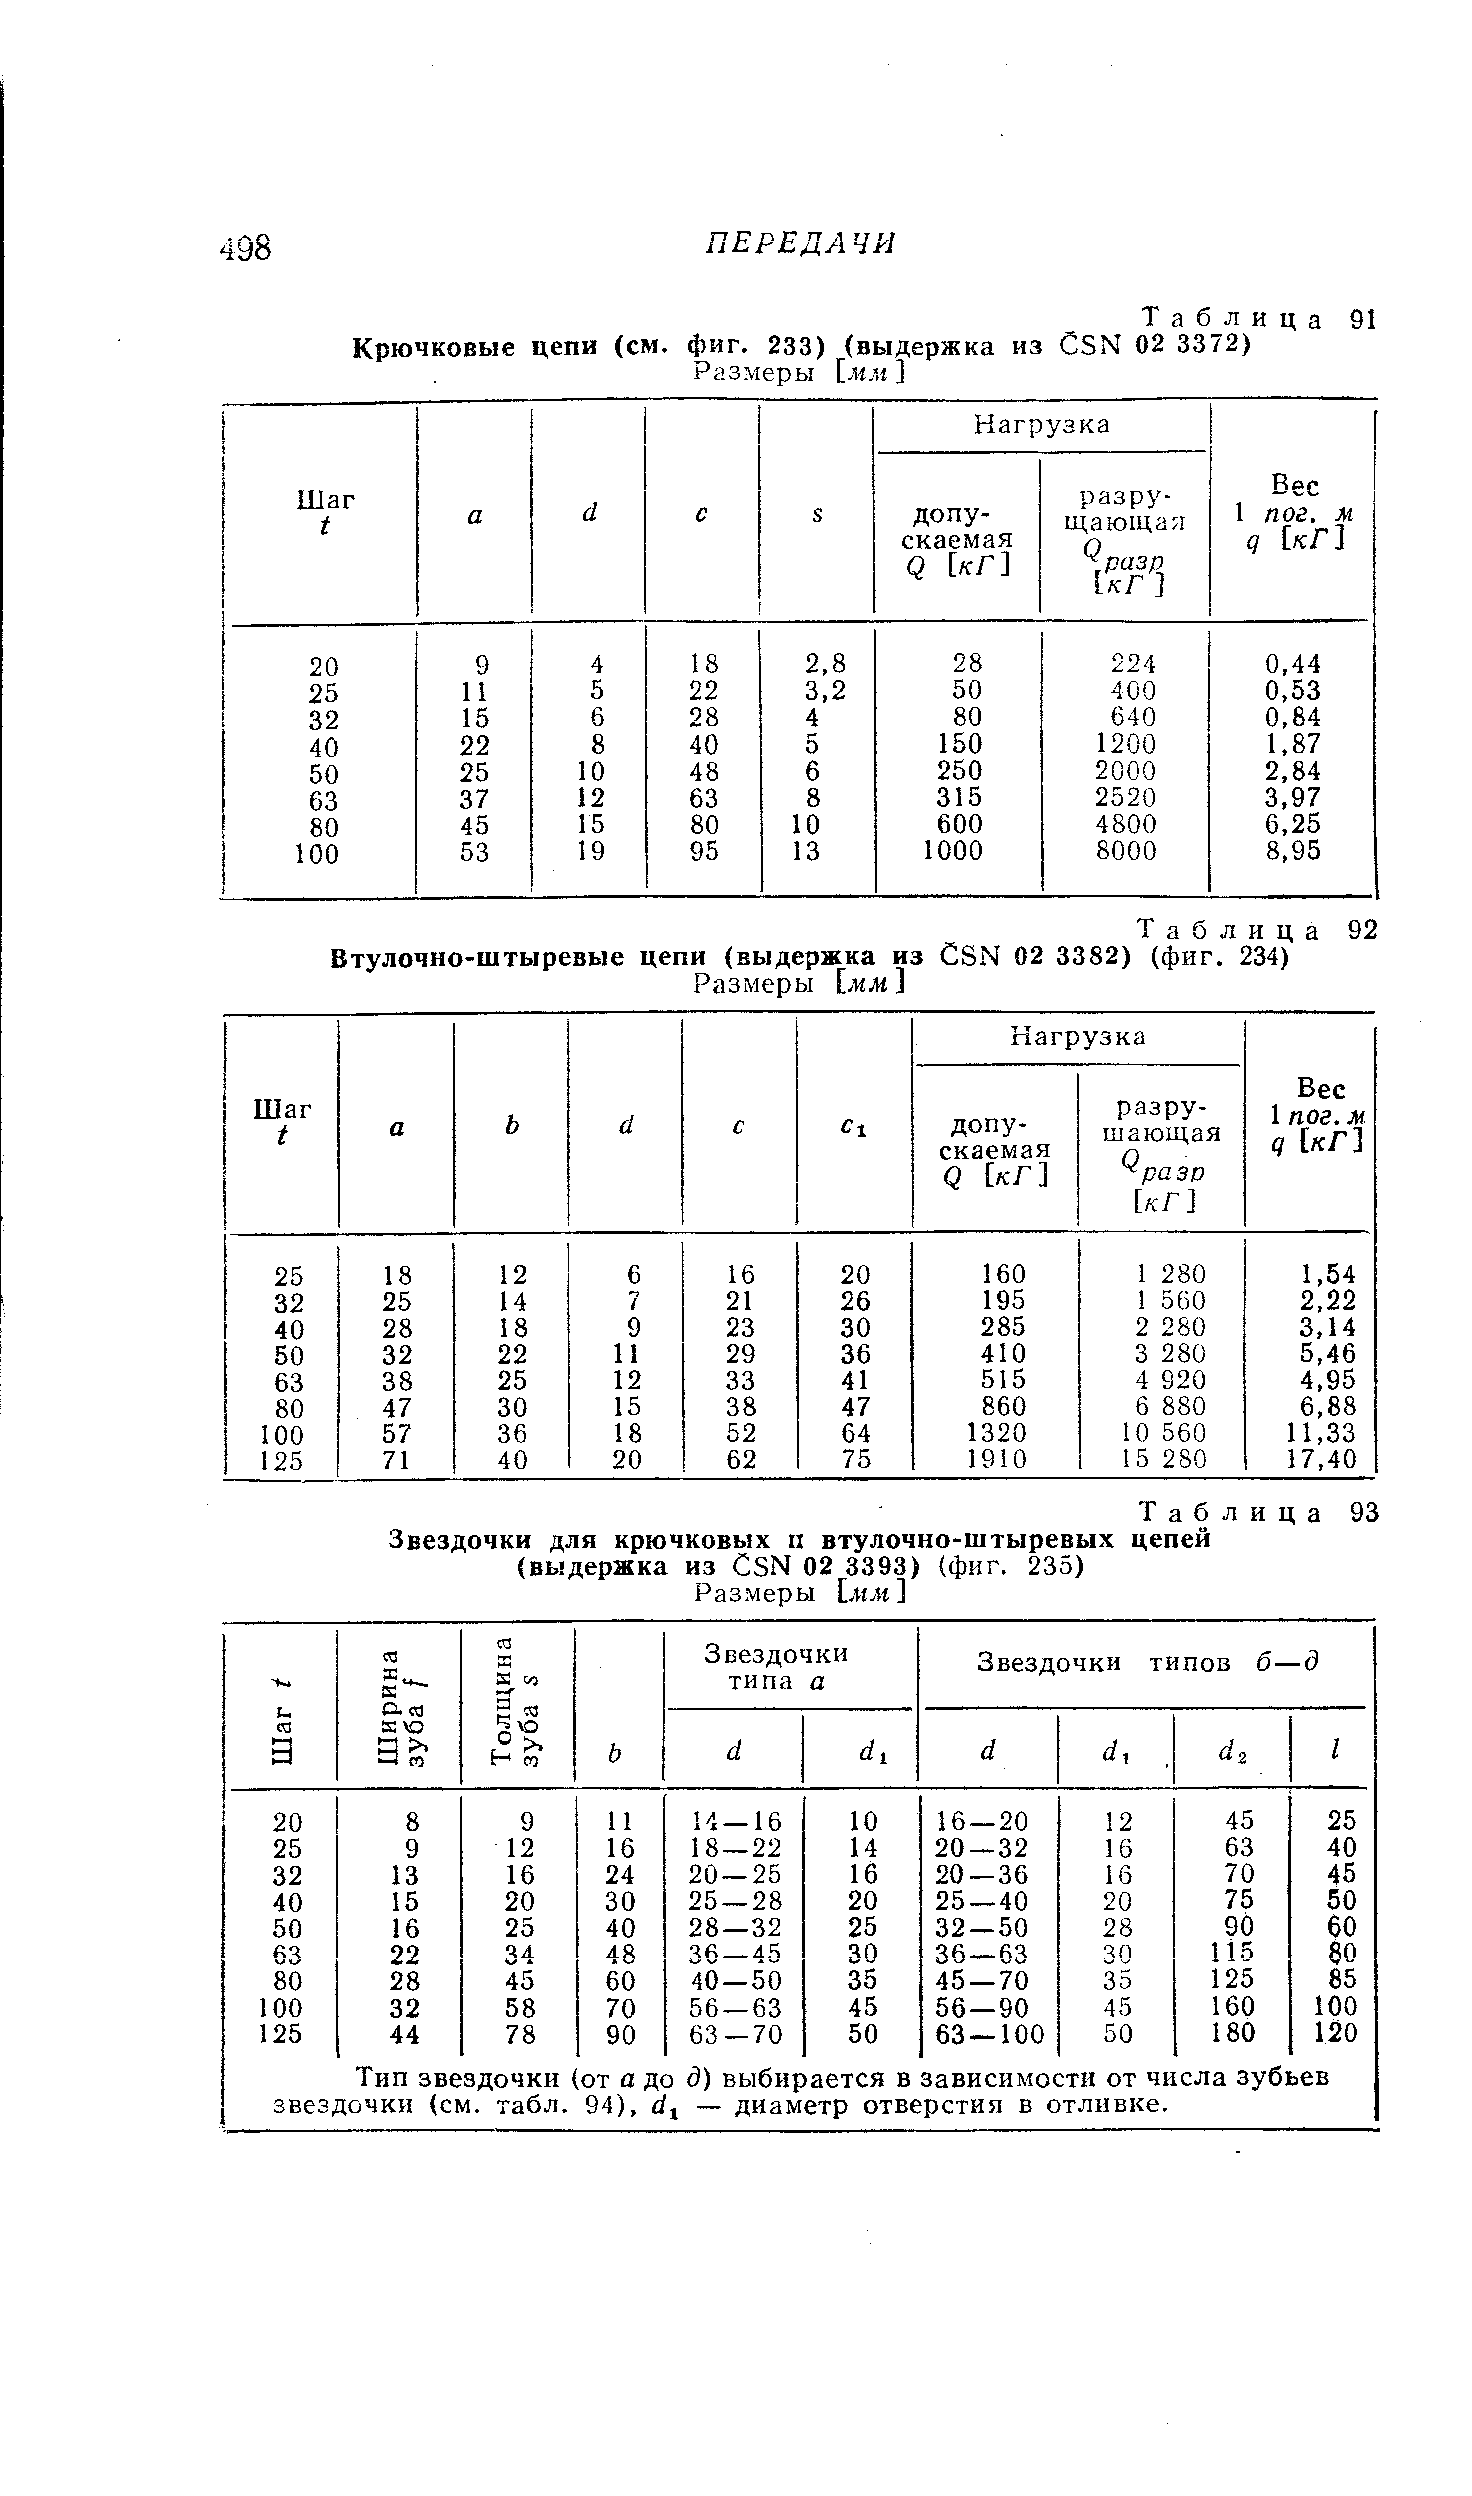 Таблица 93 Звездочки для крючковых п <a href="/info/432418">втулочно-штыревых цепей</a> (выдержка из СЗМ 02 3393) (фиг. 235)
